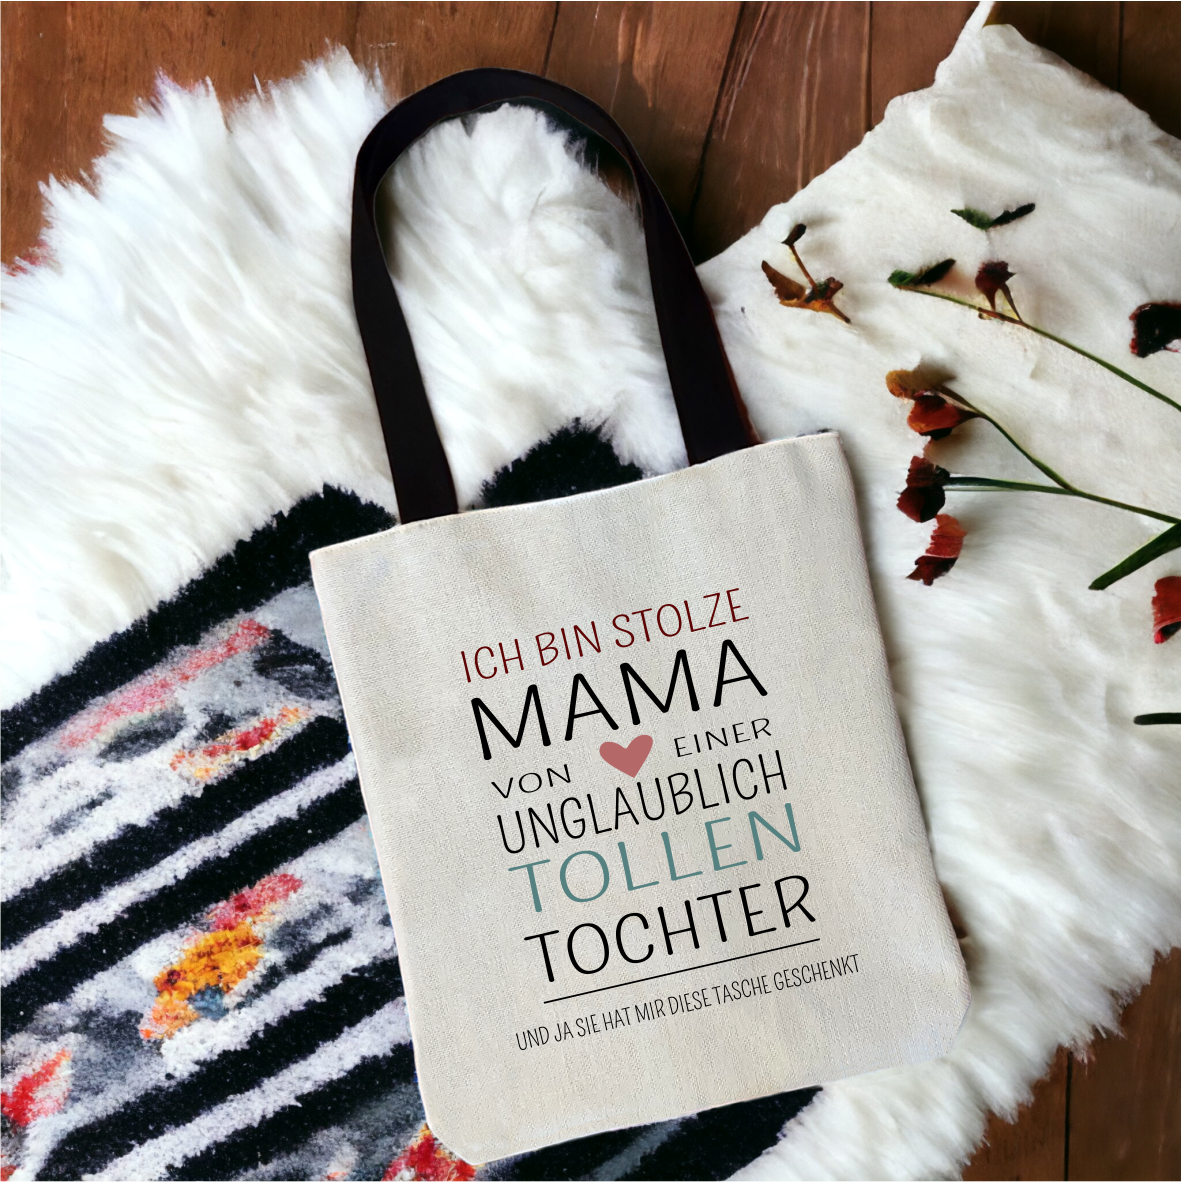 Einkaufstasche "Ich bin stolze Mama von einer unglaublich tollenTochter...."